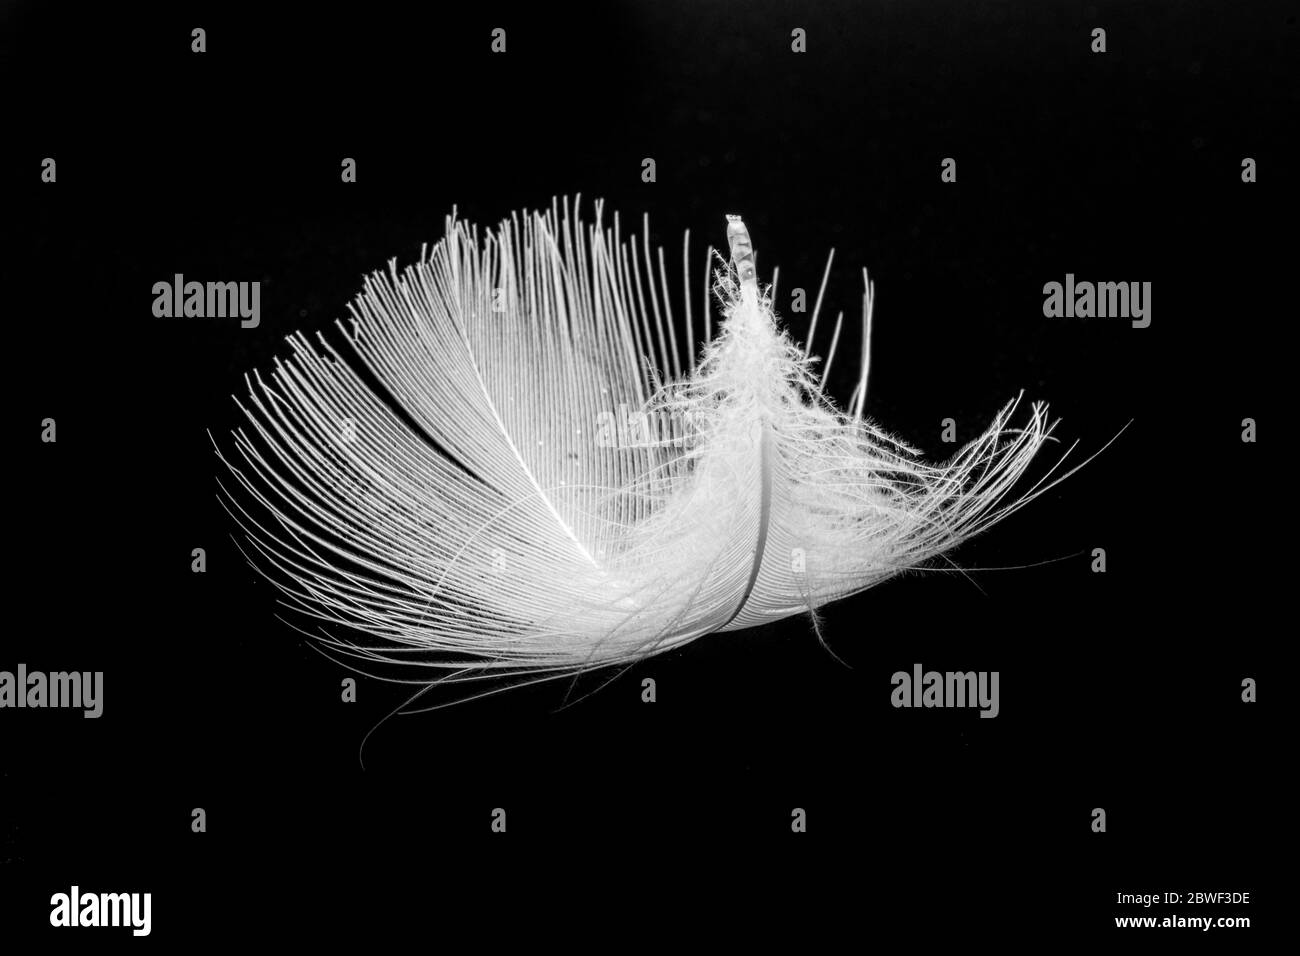 Monochrome macro photo of floating white bird feather. Royalty free stock photo. Stock Photo